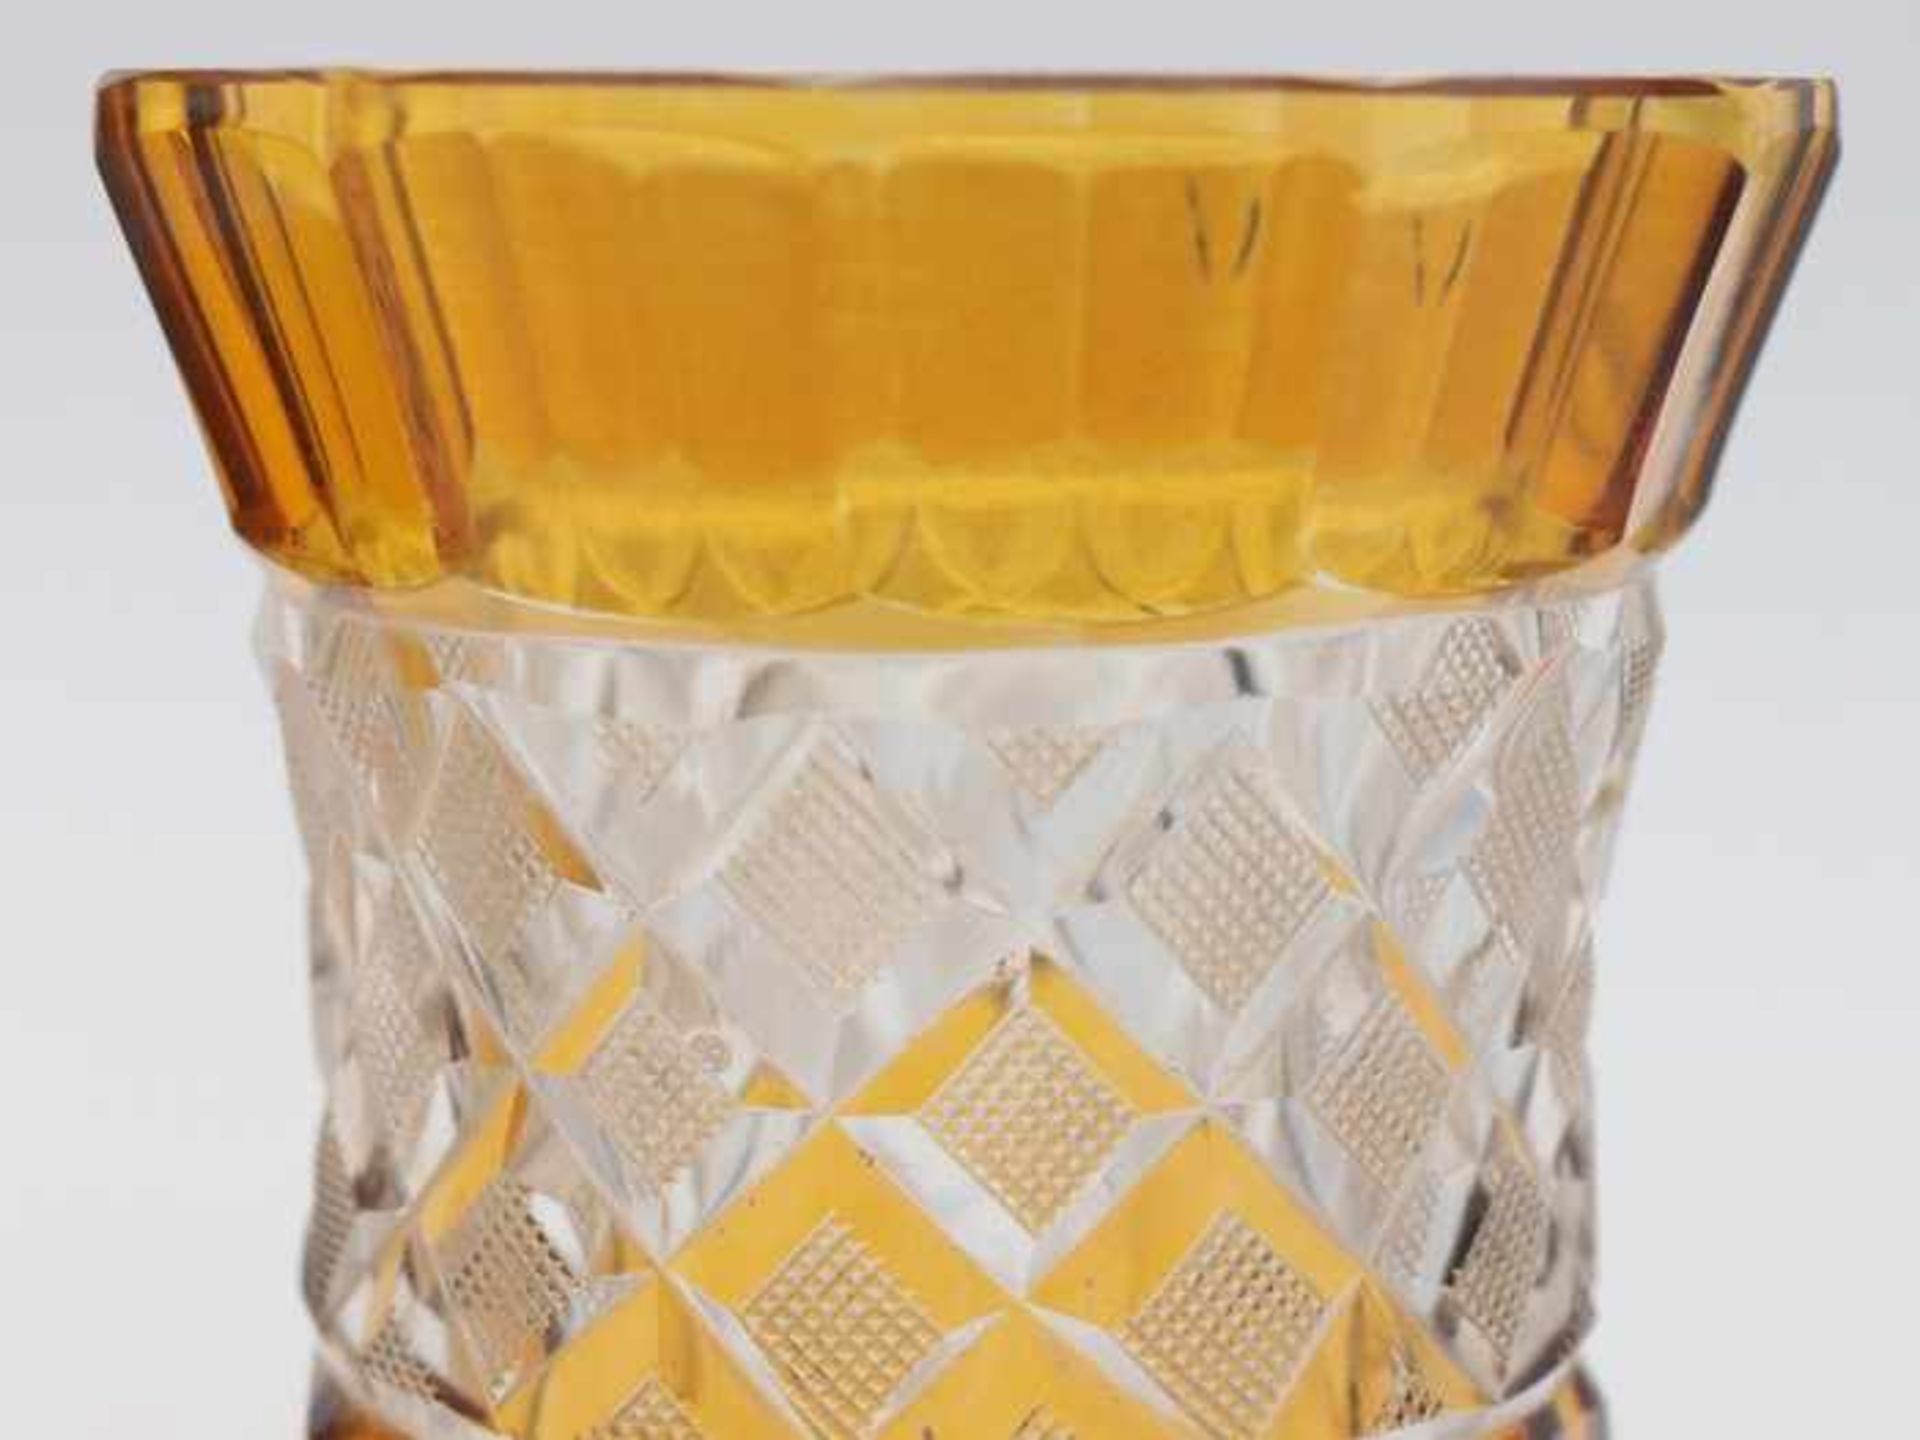 Becherum 1900, 2 St., untersch. Formen u. Größen, farbloses dickw. Glas, part. gelb gebeizt, 1x m. - Image 3 of 3